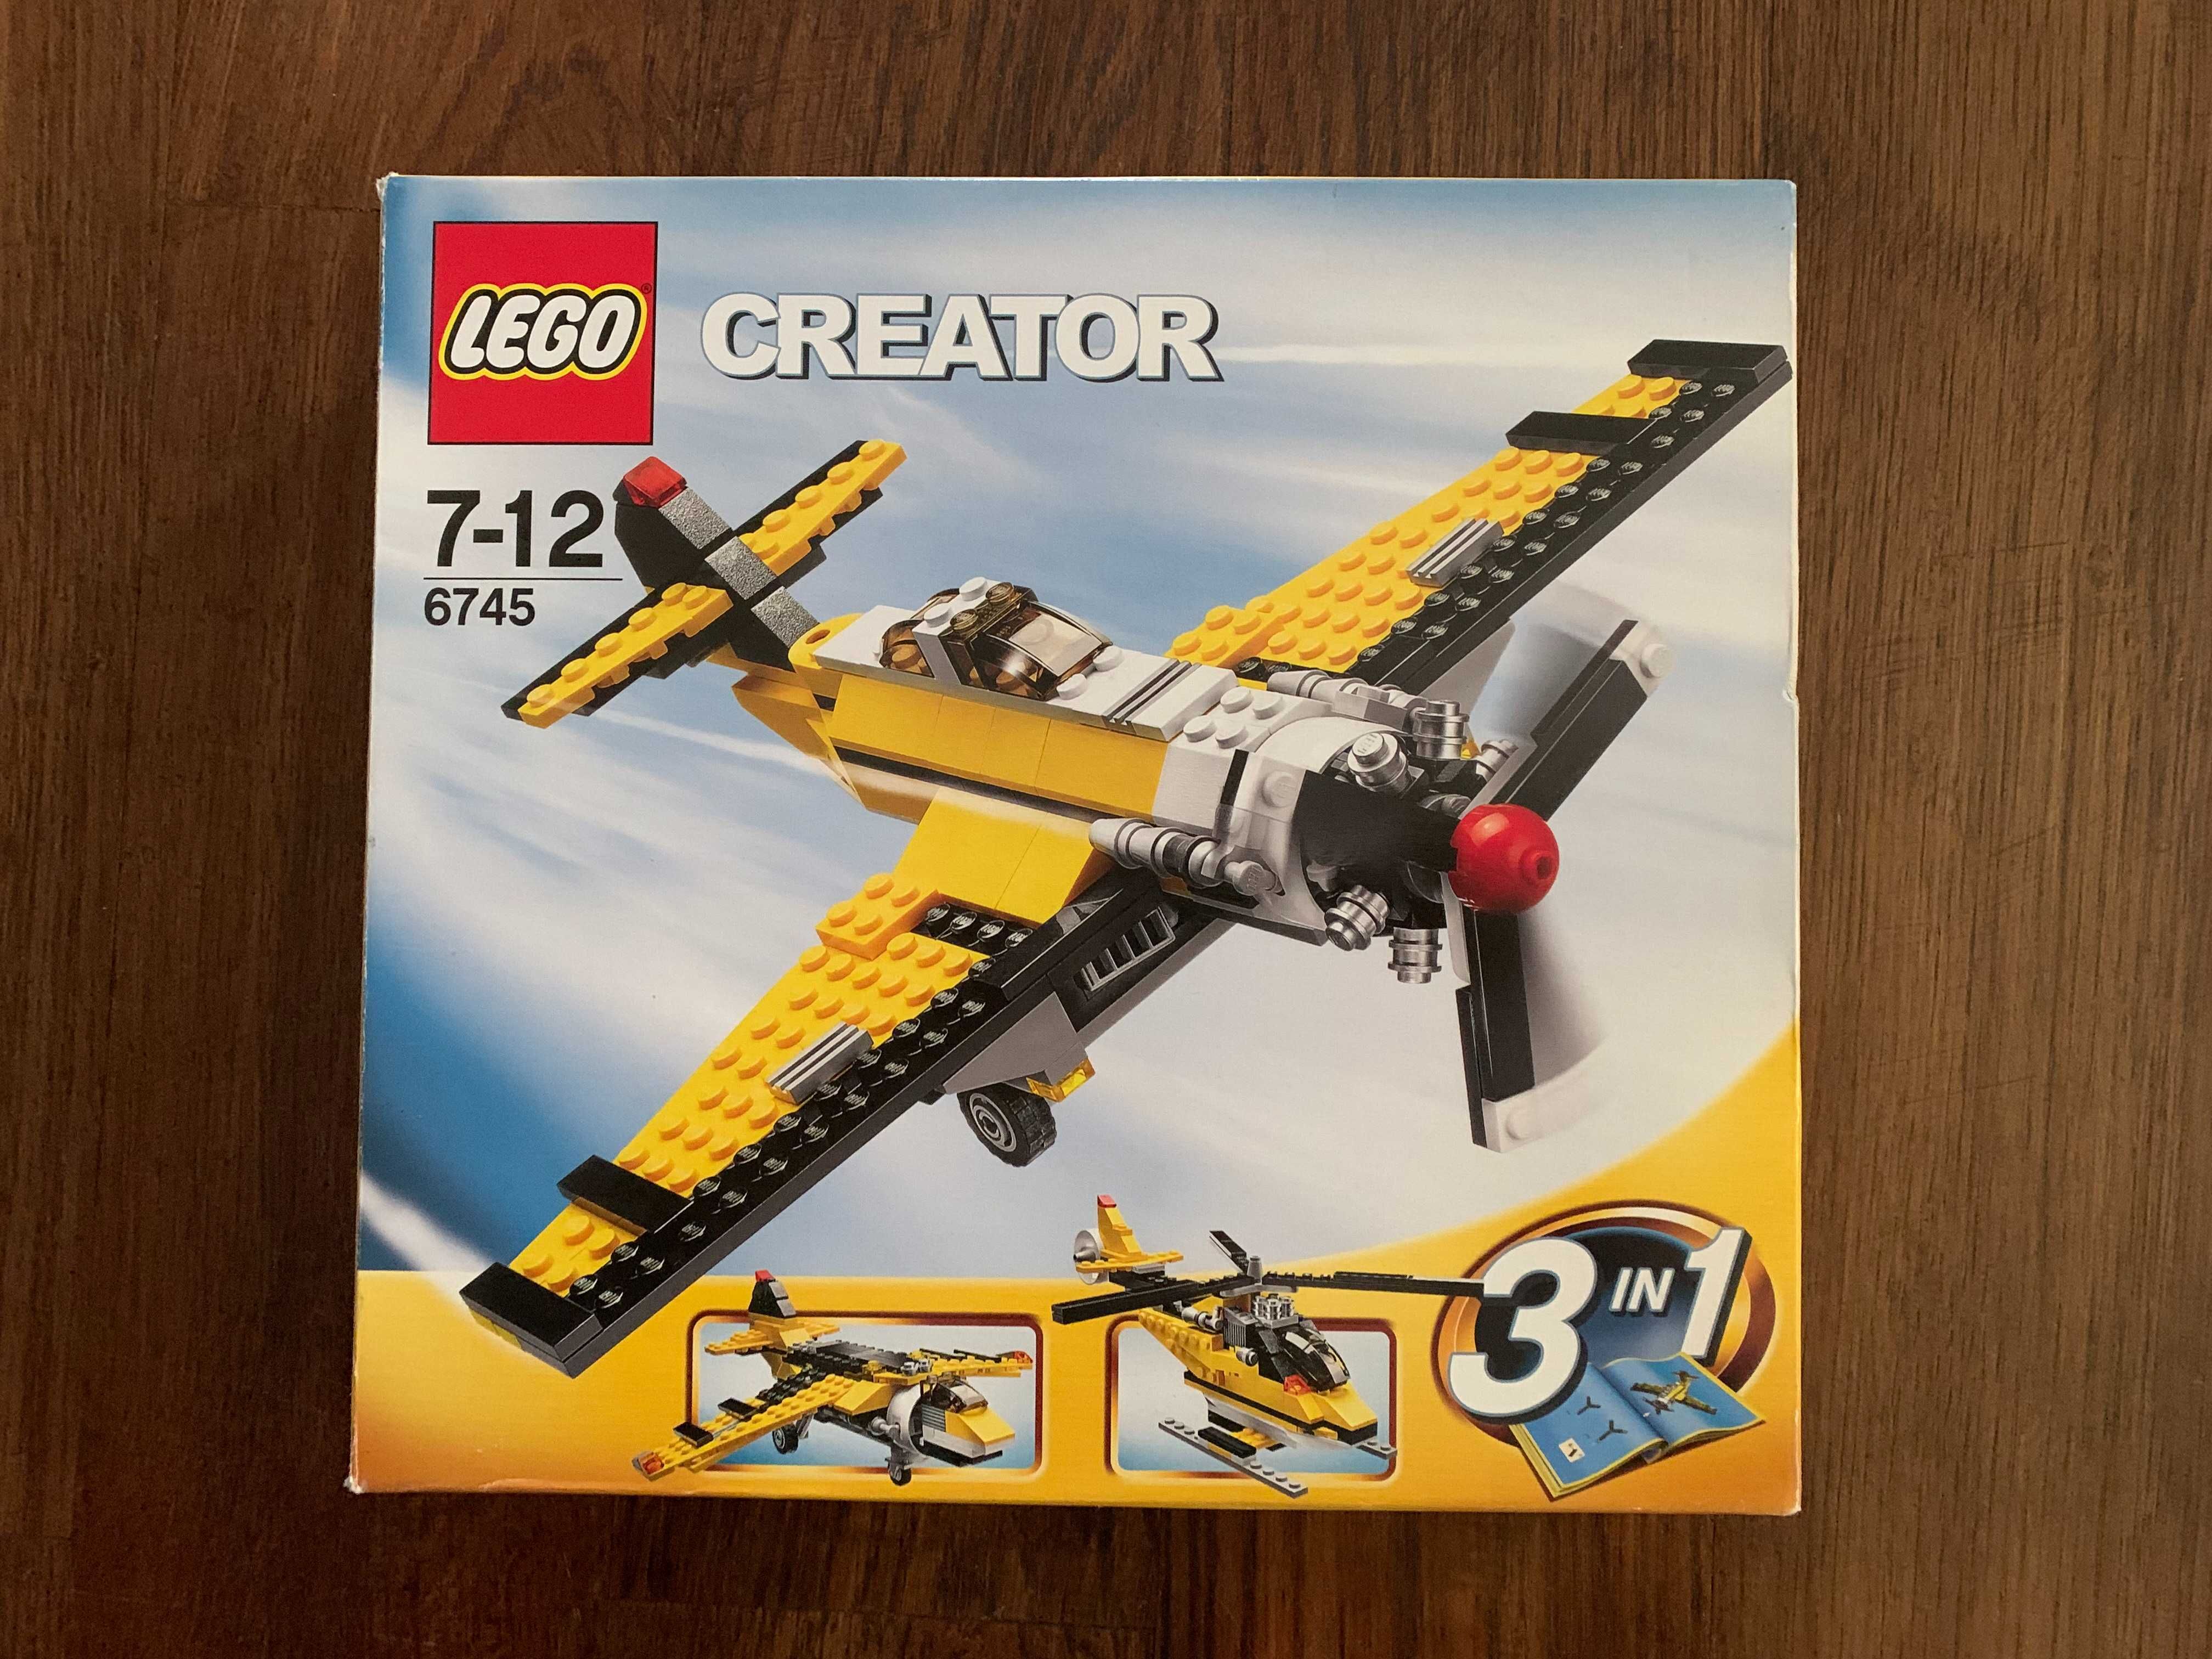 Lego Creator 3 In 1 Propeller Power-6745